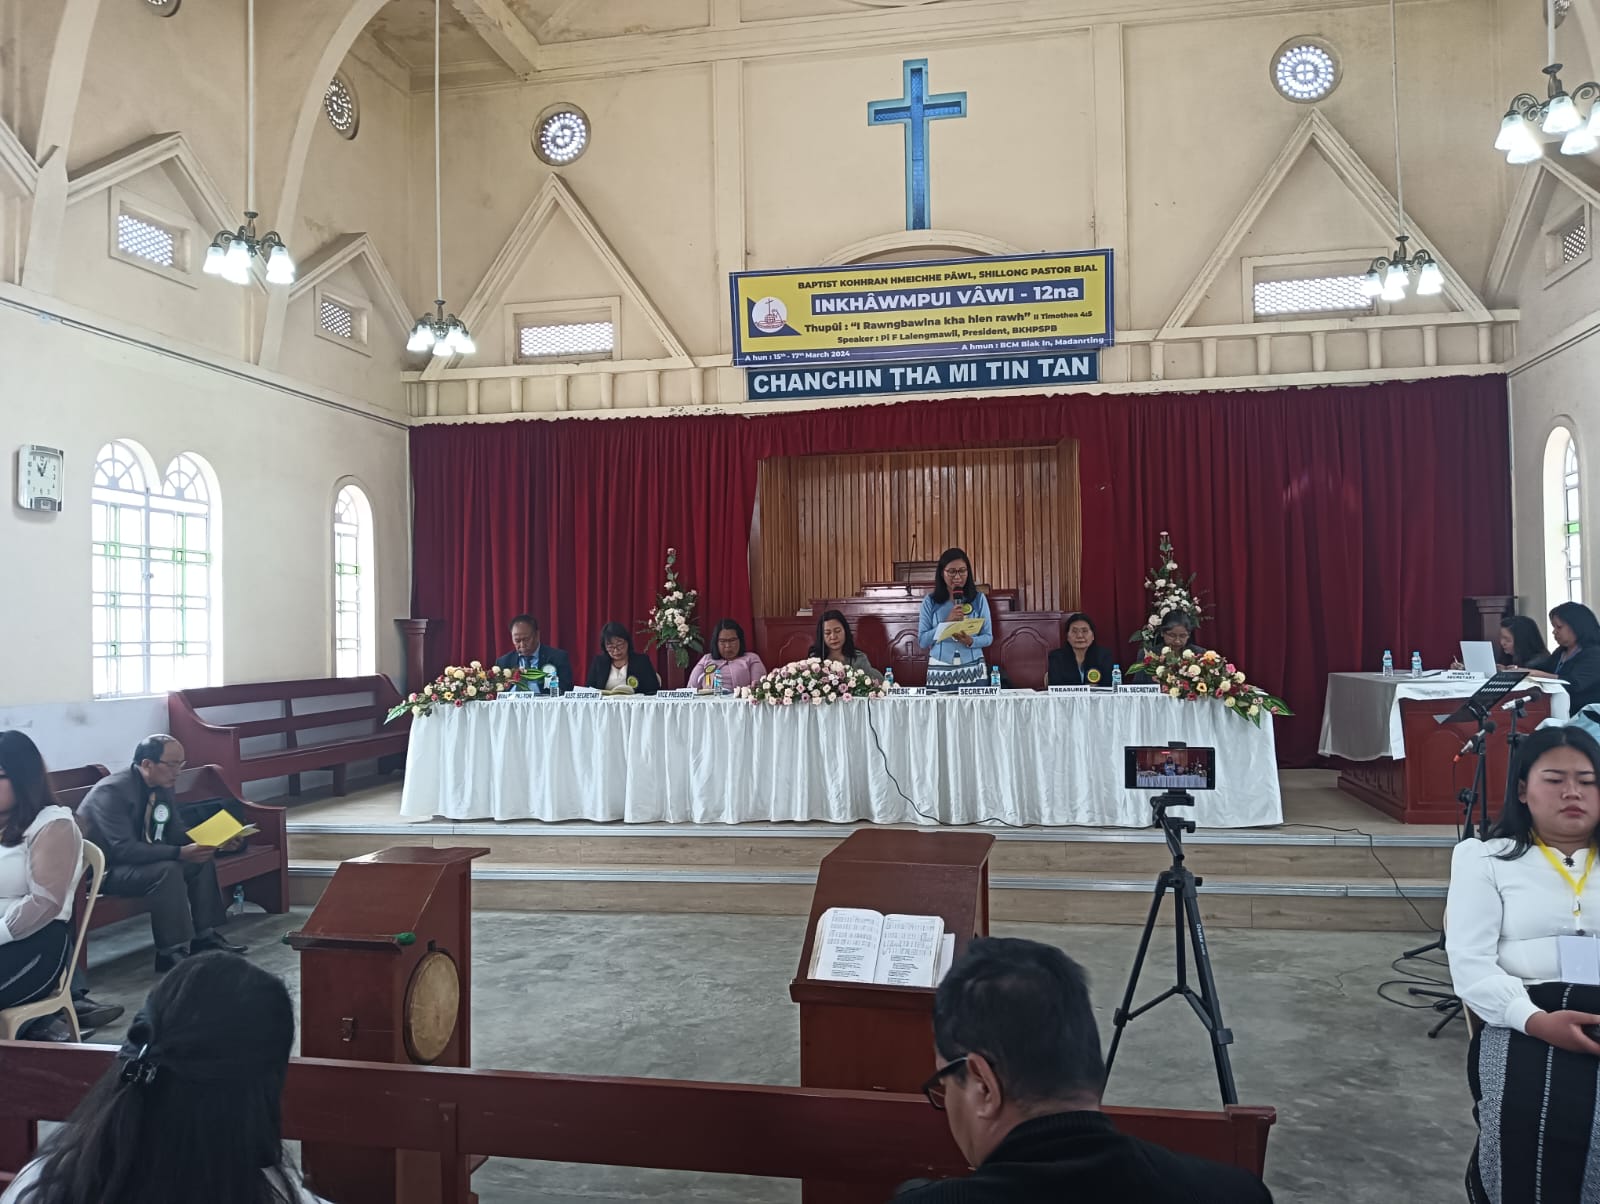 BKHP Shillong Pastor Bial Inkhawmpui vawi 12-na neih a ni